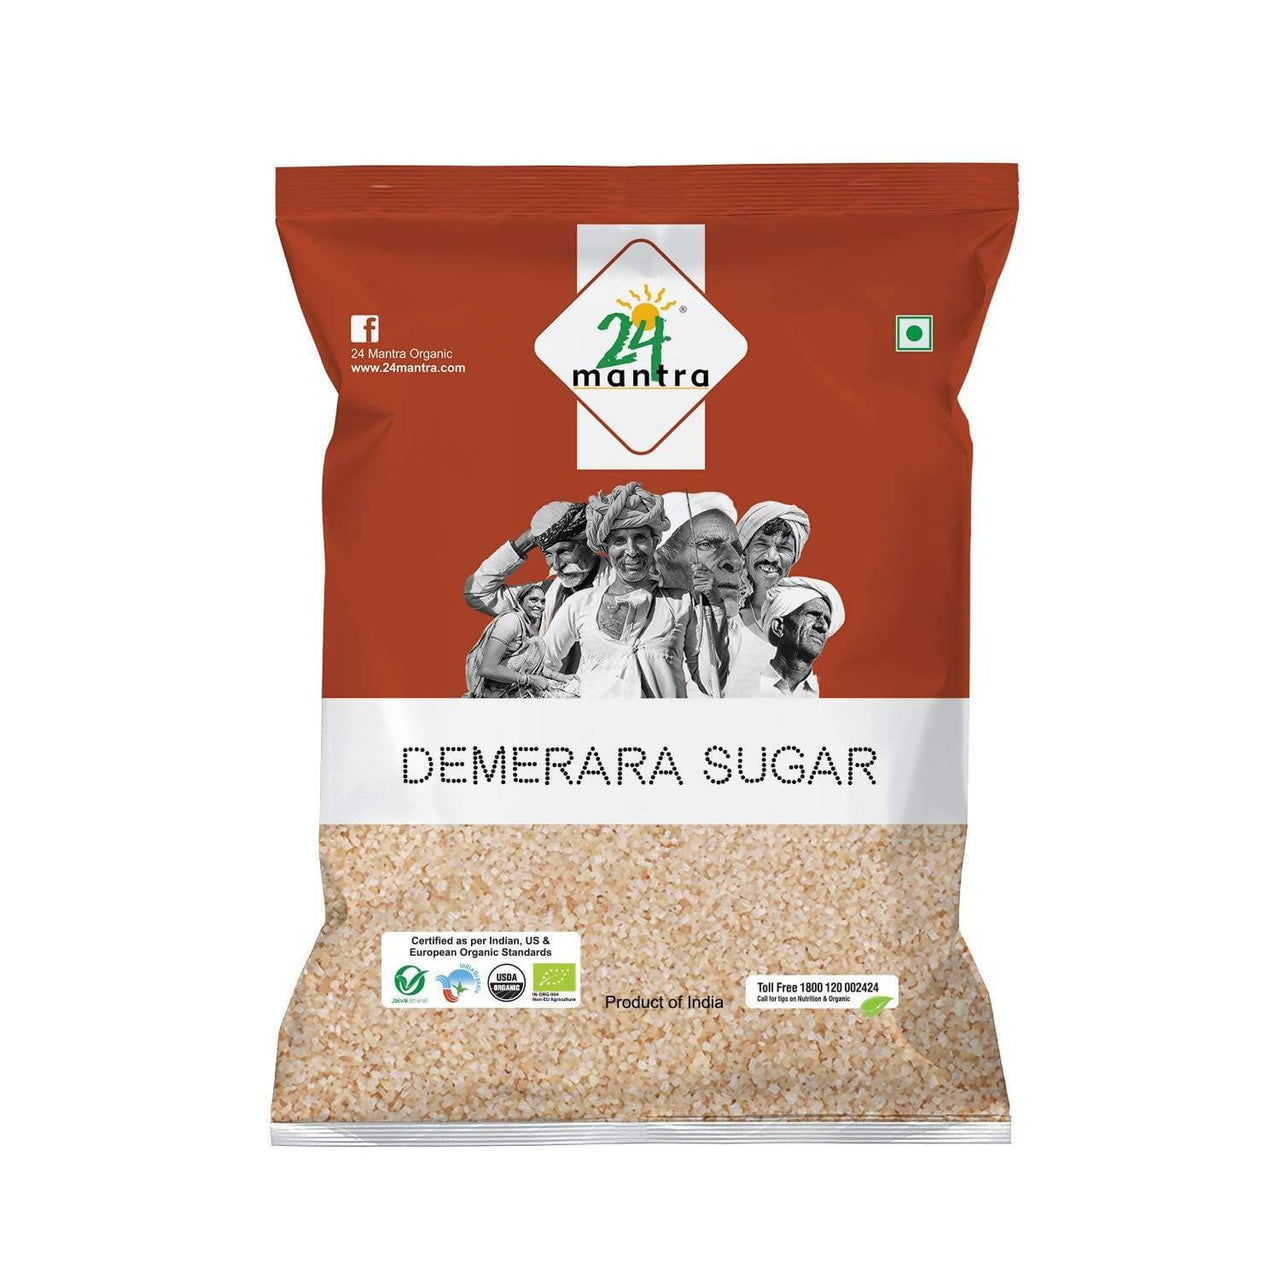 24 Mantra Organic Demerara Sugar